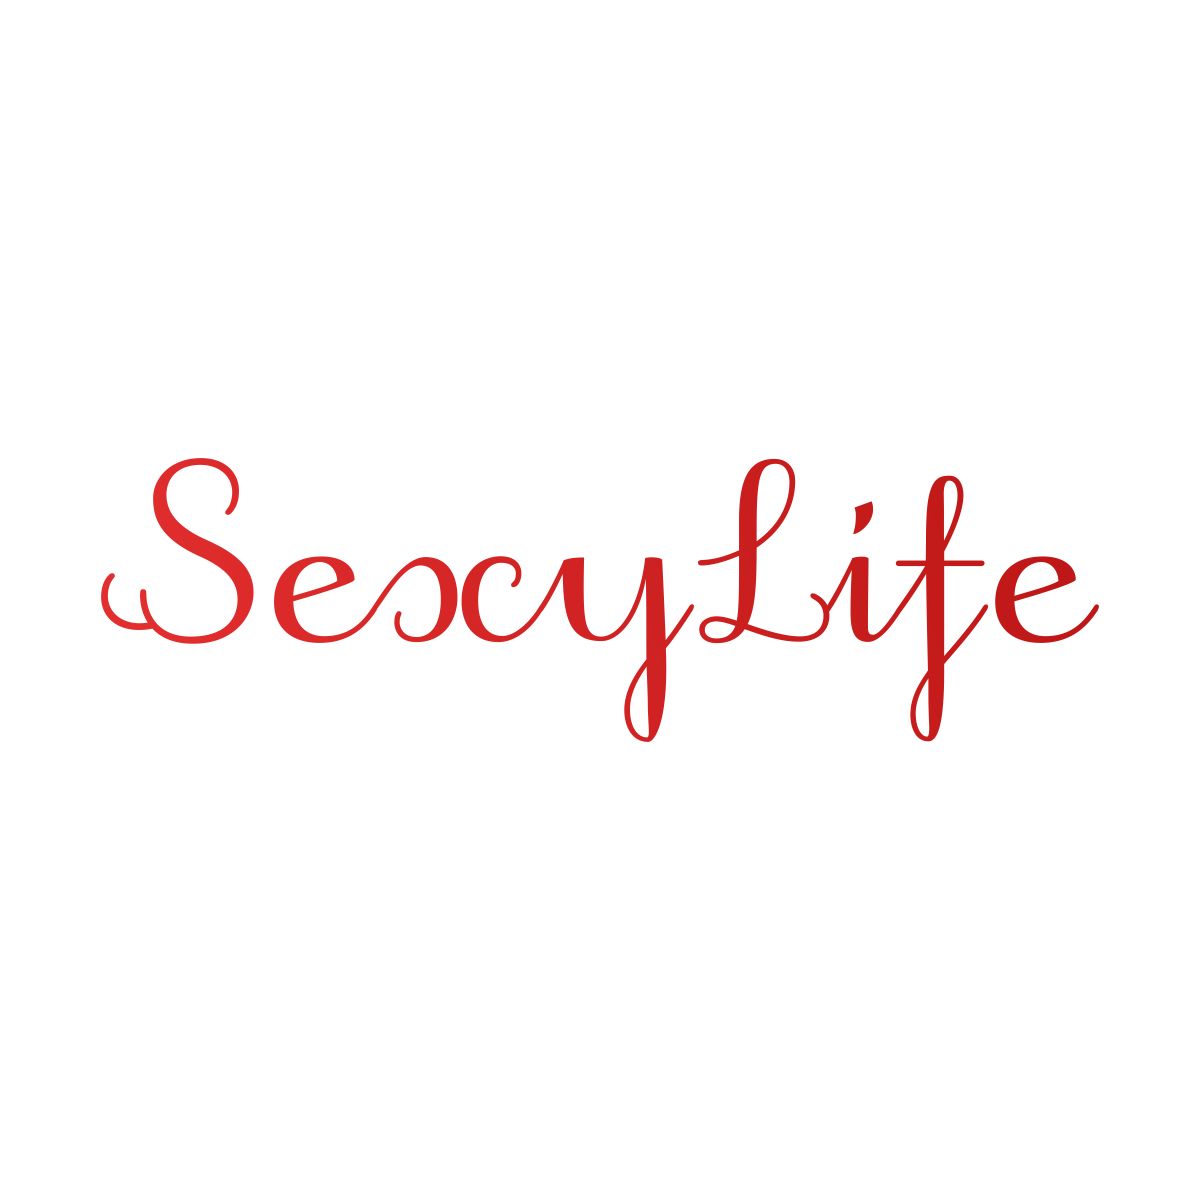 Логотип для Sexylife - дизайнер everypixel